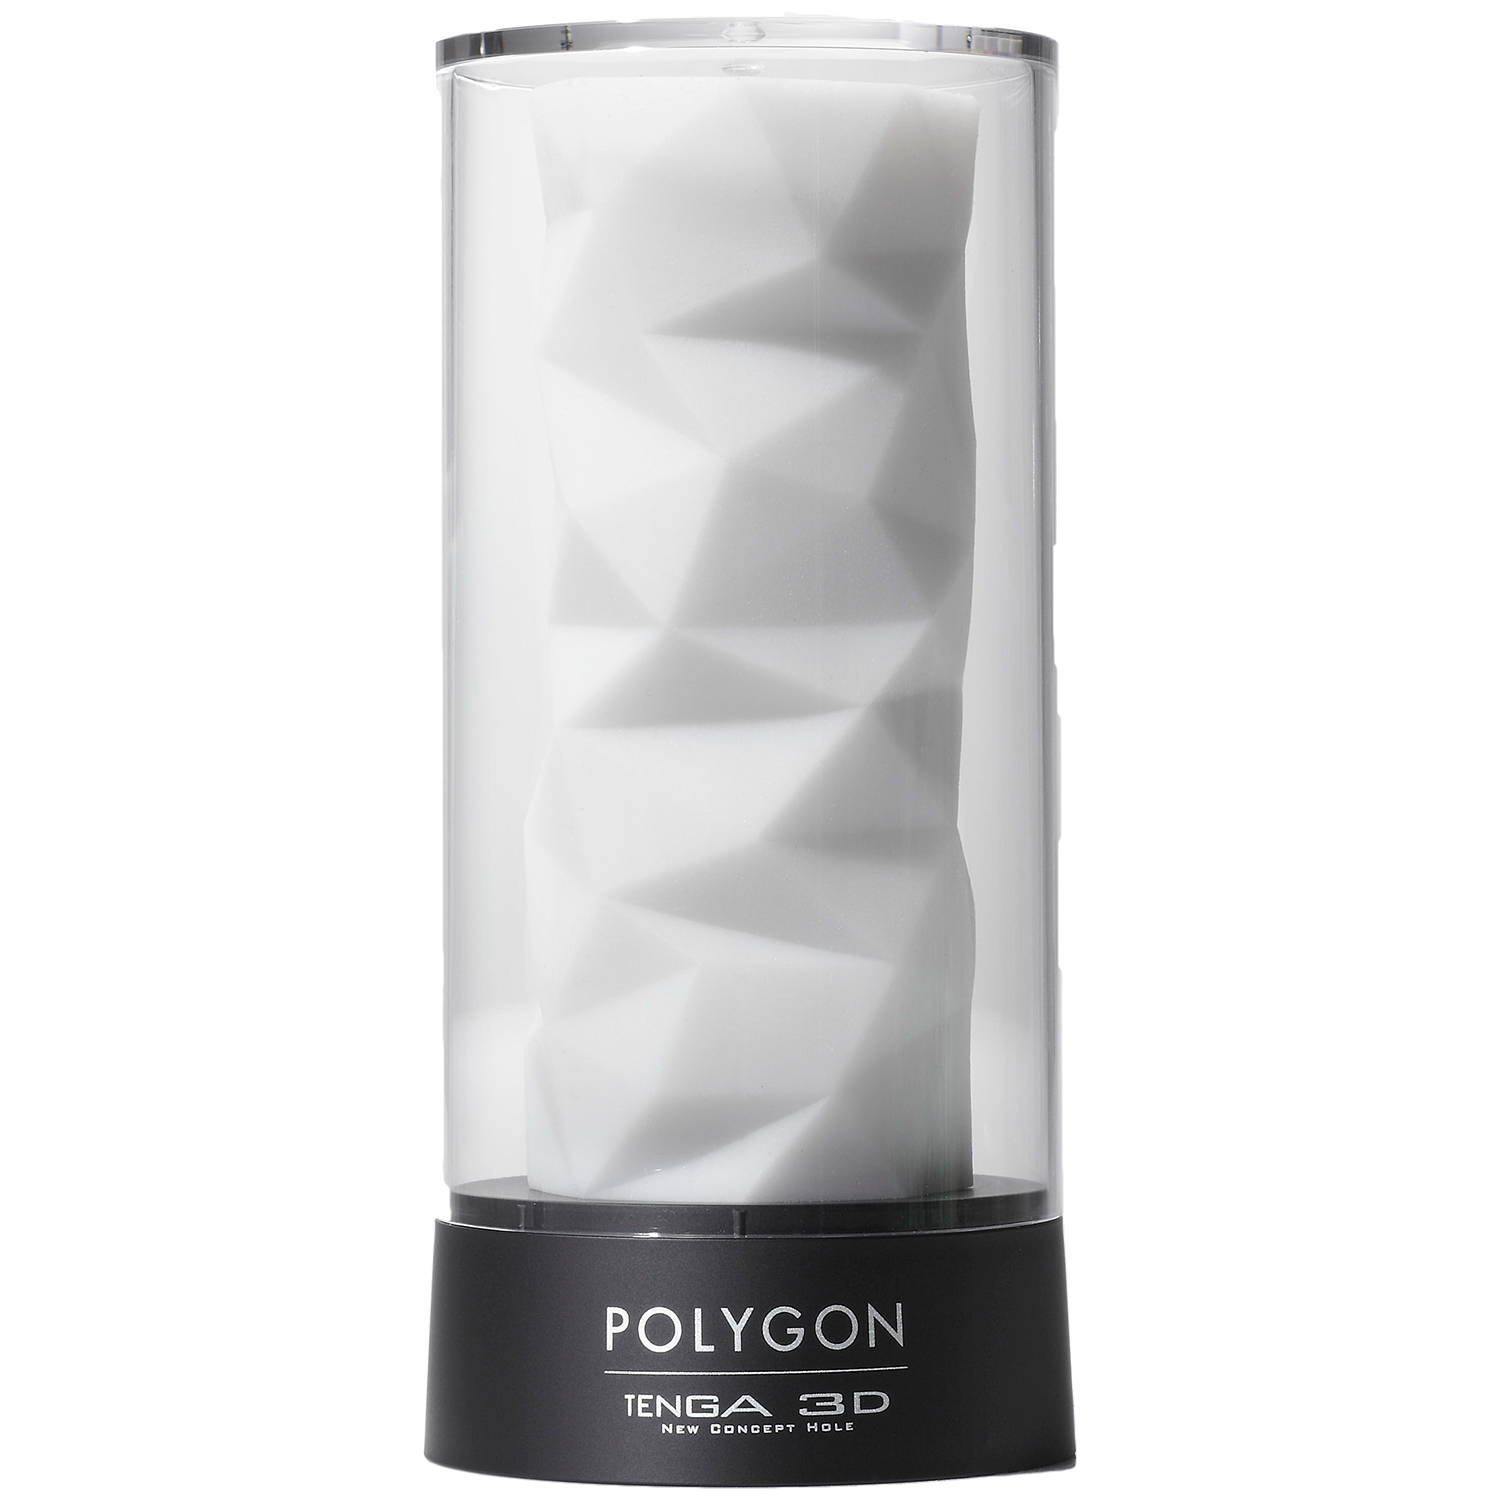 Tenga 3D Polygon Onaniprodukt       - Hvid thumbnail